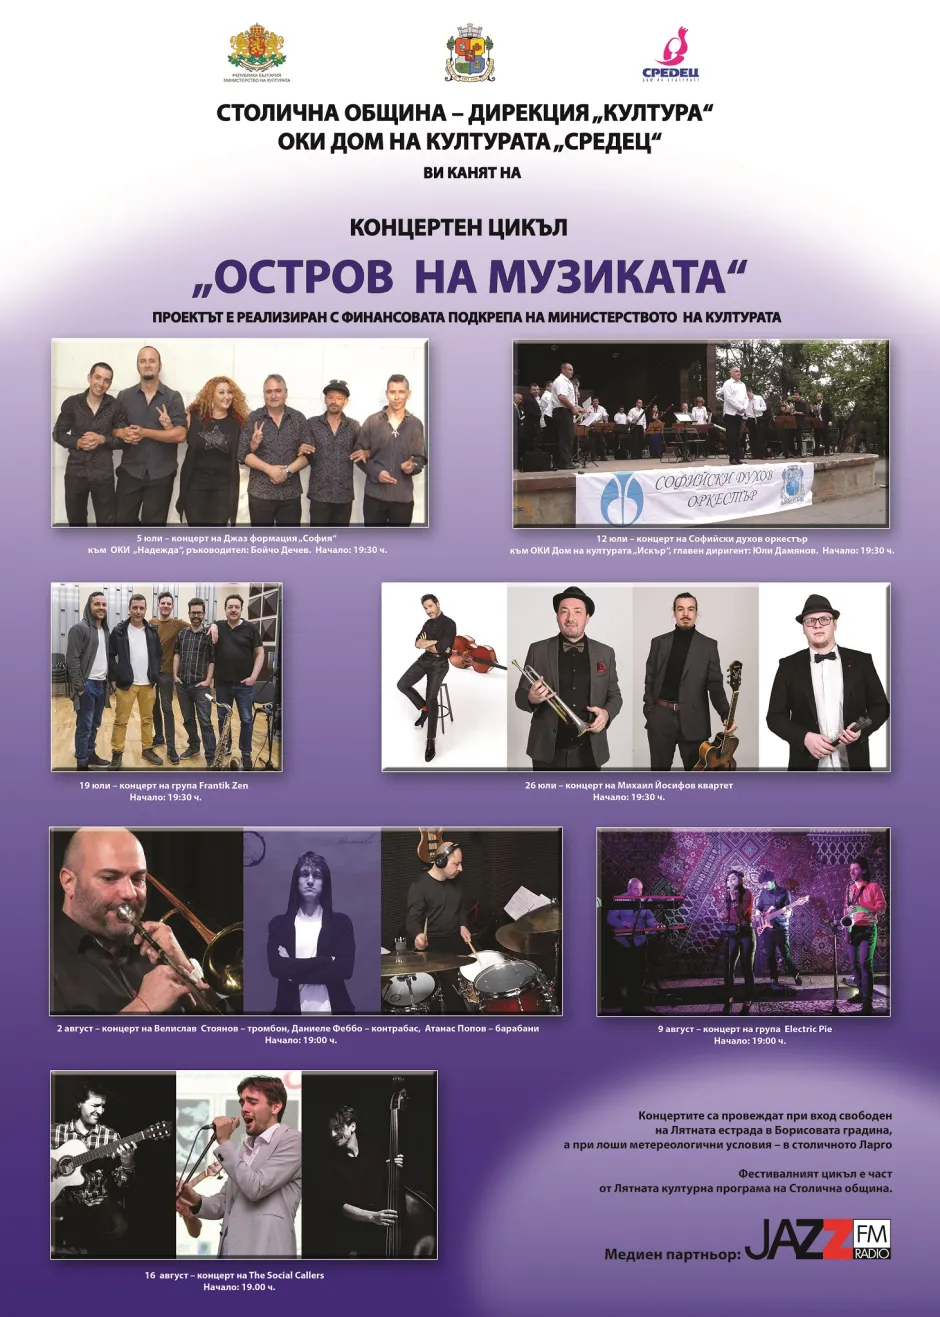 Джазът в неговото богатство и многообразие в седем концерта от цикъла „Остров на музиката“, организиран от ОКИ Дом на културата „Средец“